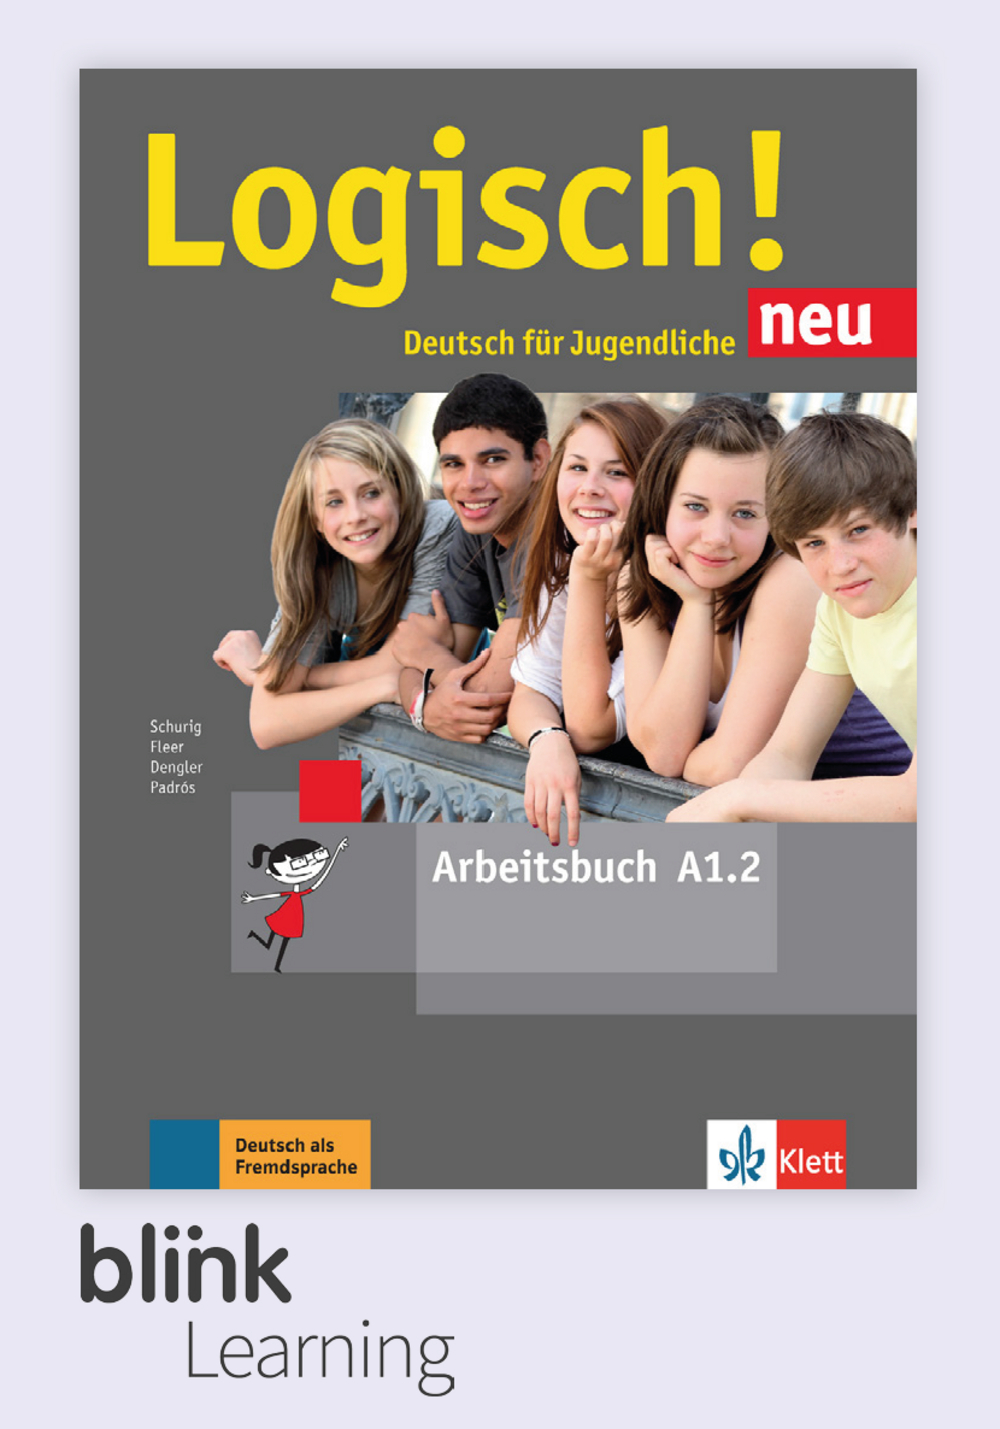 Logisch! neu A1.2 Digital Arbeitsbuch fur Unterrichtende / Цифровая рабочая тетрадь для учителя